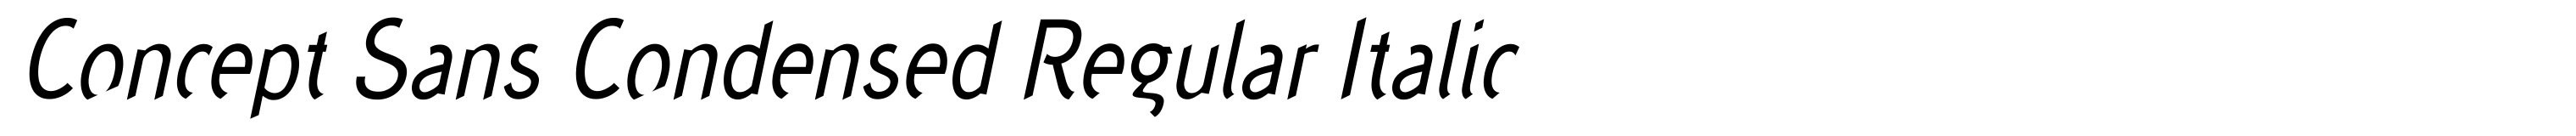 Concept Sans Condensed Regular Italic